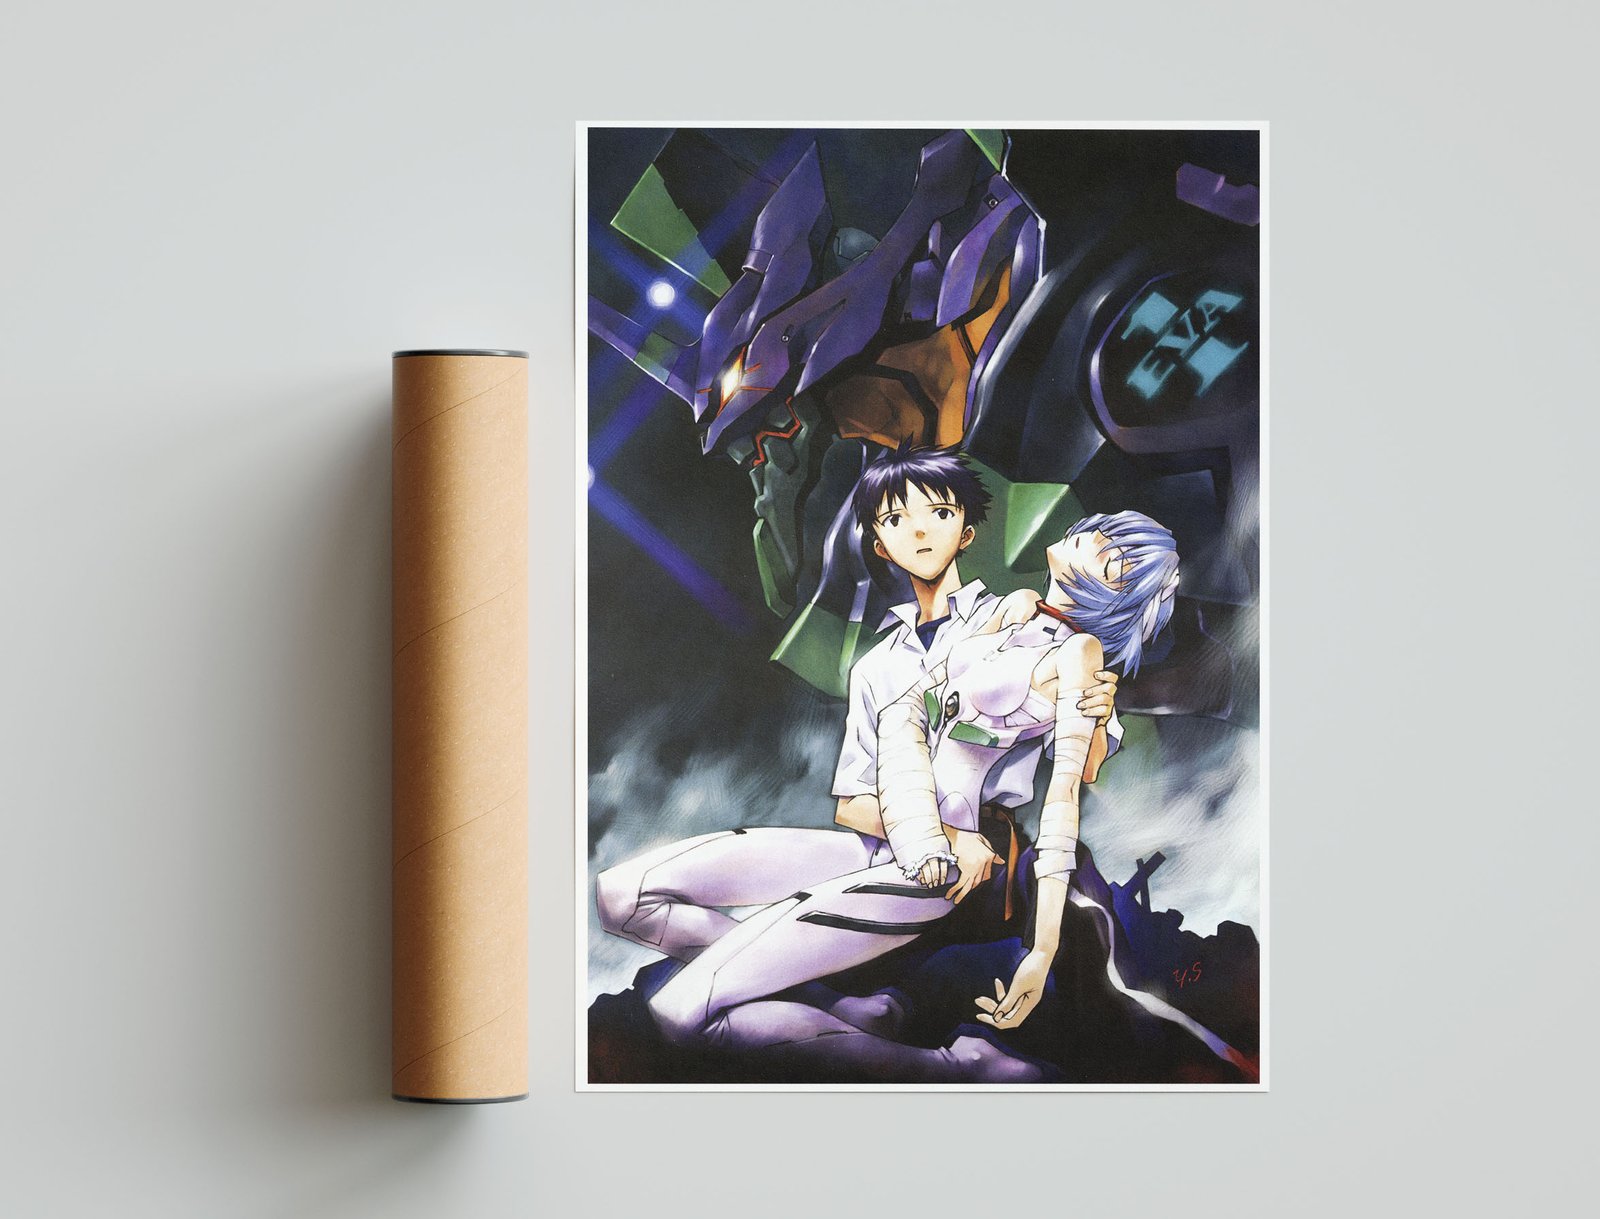 Yoyo Anime Neon Genesis ayanami Rei Mô hình nhân vật evangelion ayanami Rei  trang trí nhà EVA đồ trang trí | Lazada.vn